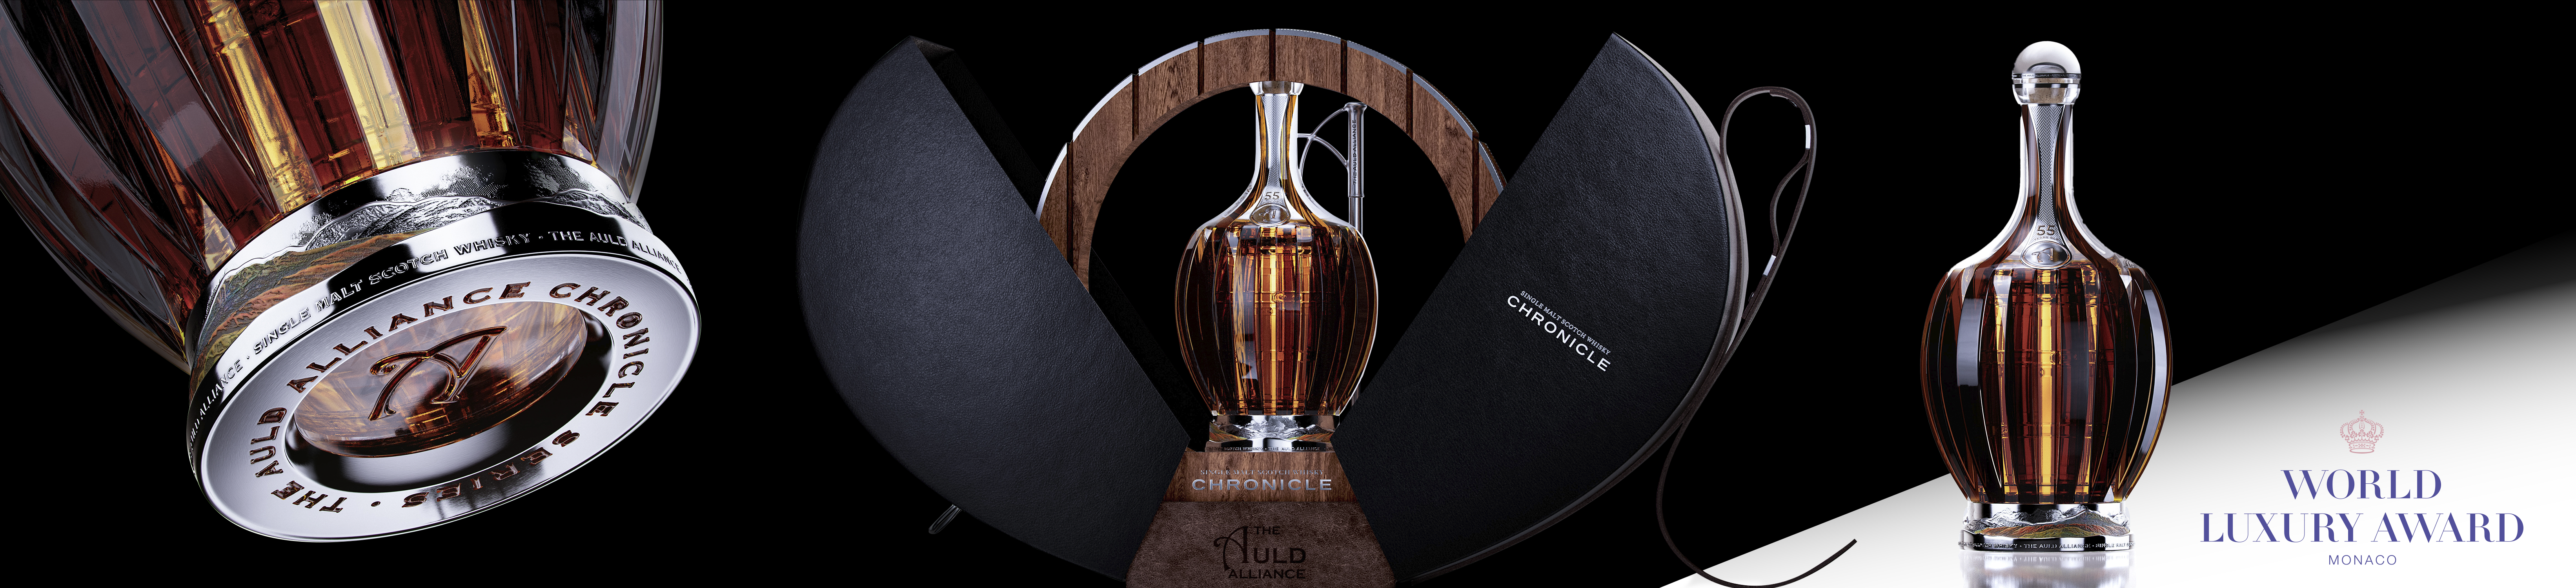 Chronicle Whisky won a World Luxury Award for Omdesign